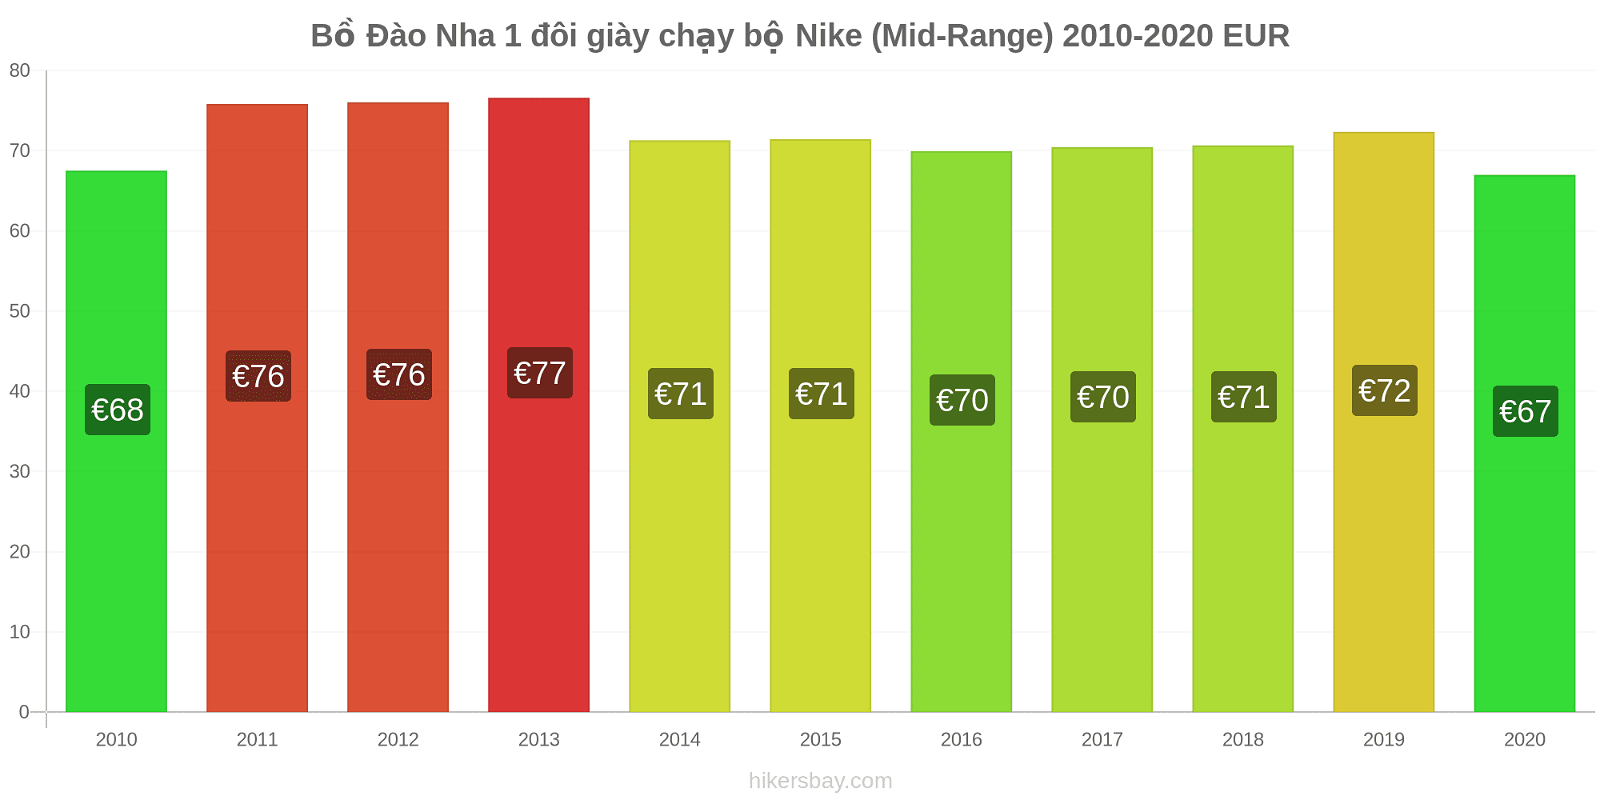 Bồ Đào Nha thay đổi giá 1 đôi giày chạy bộ Nike (Mid-Range) hikersbay.com